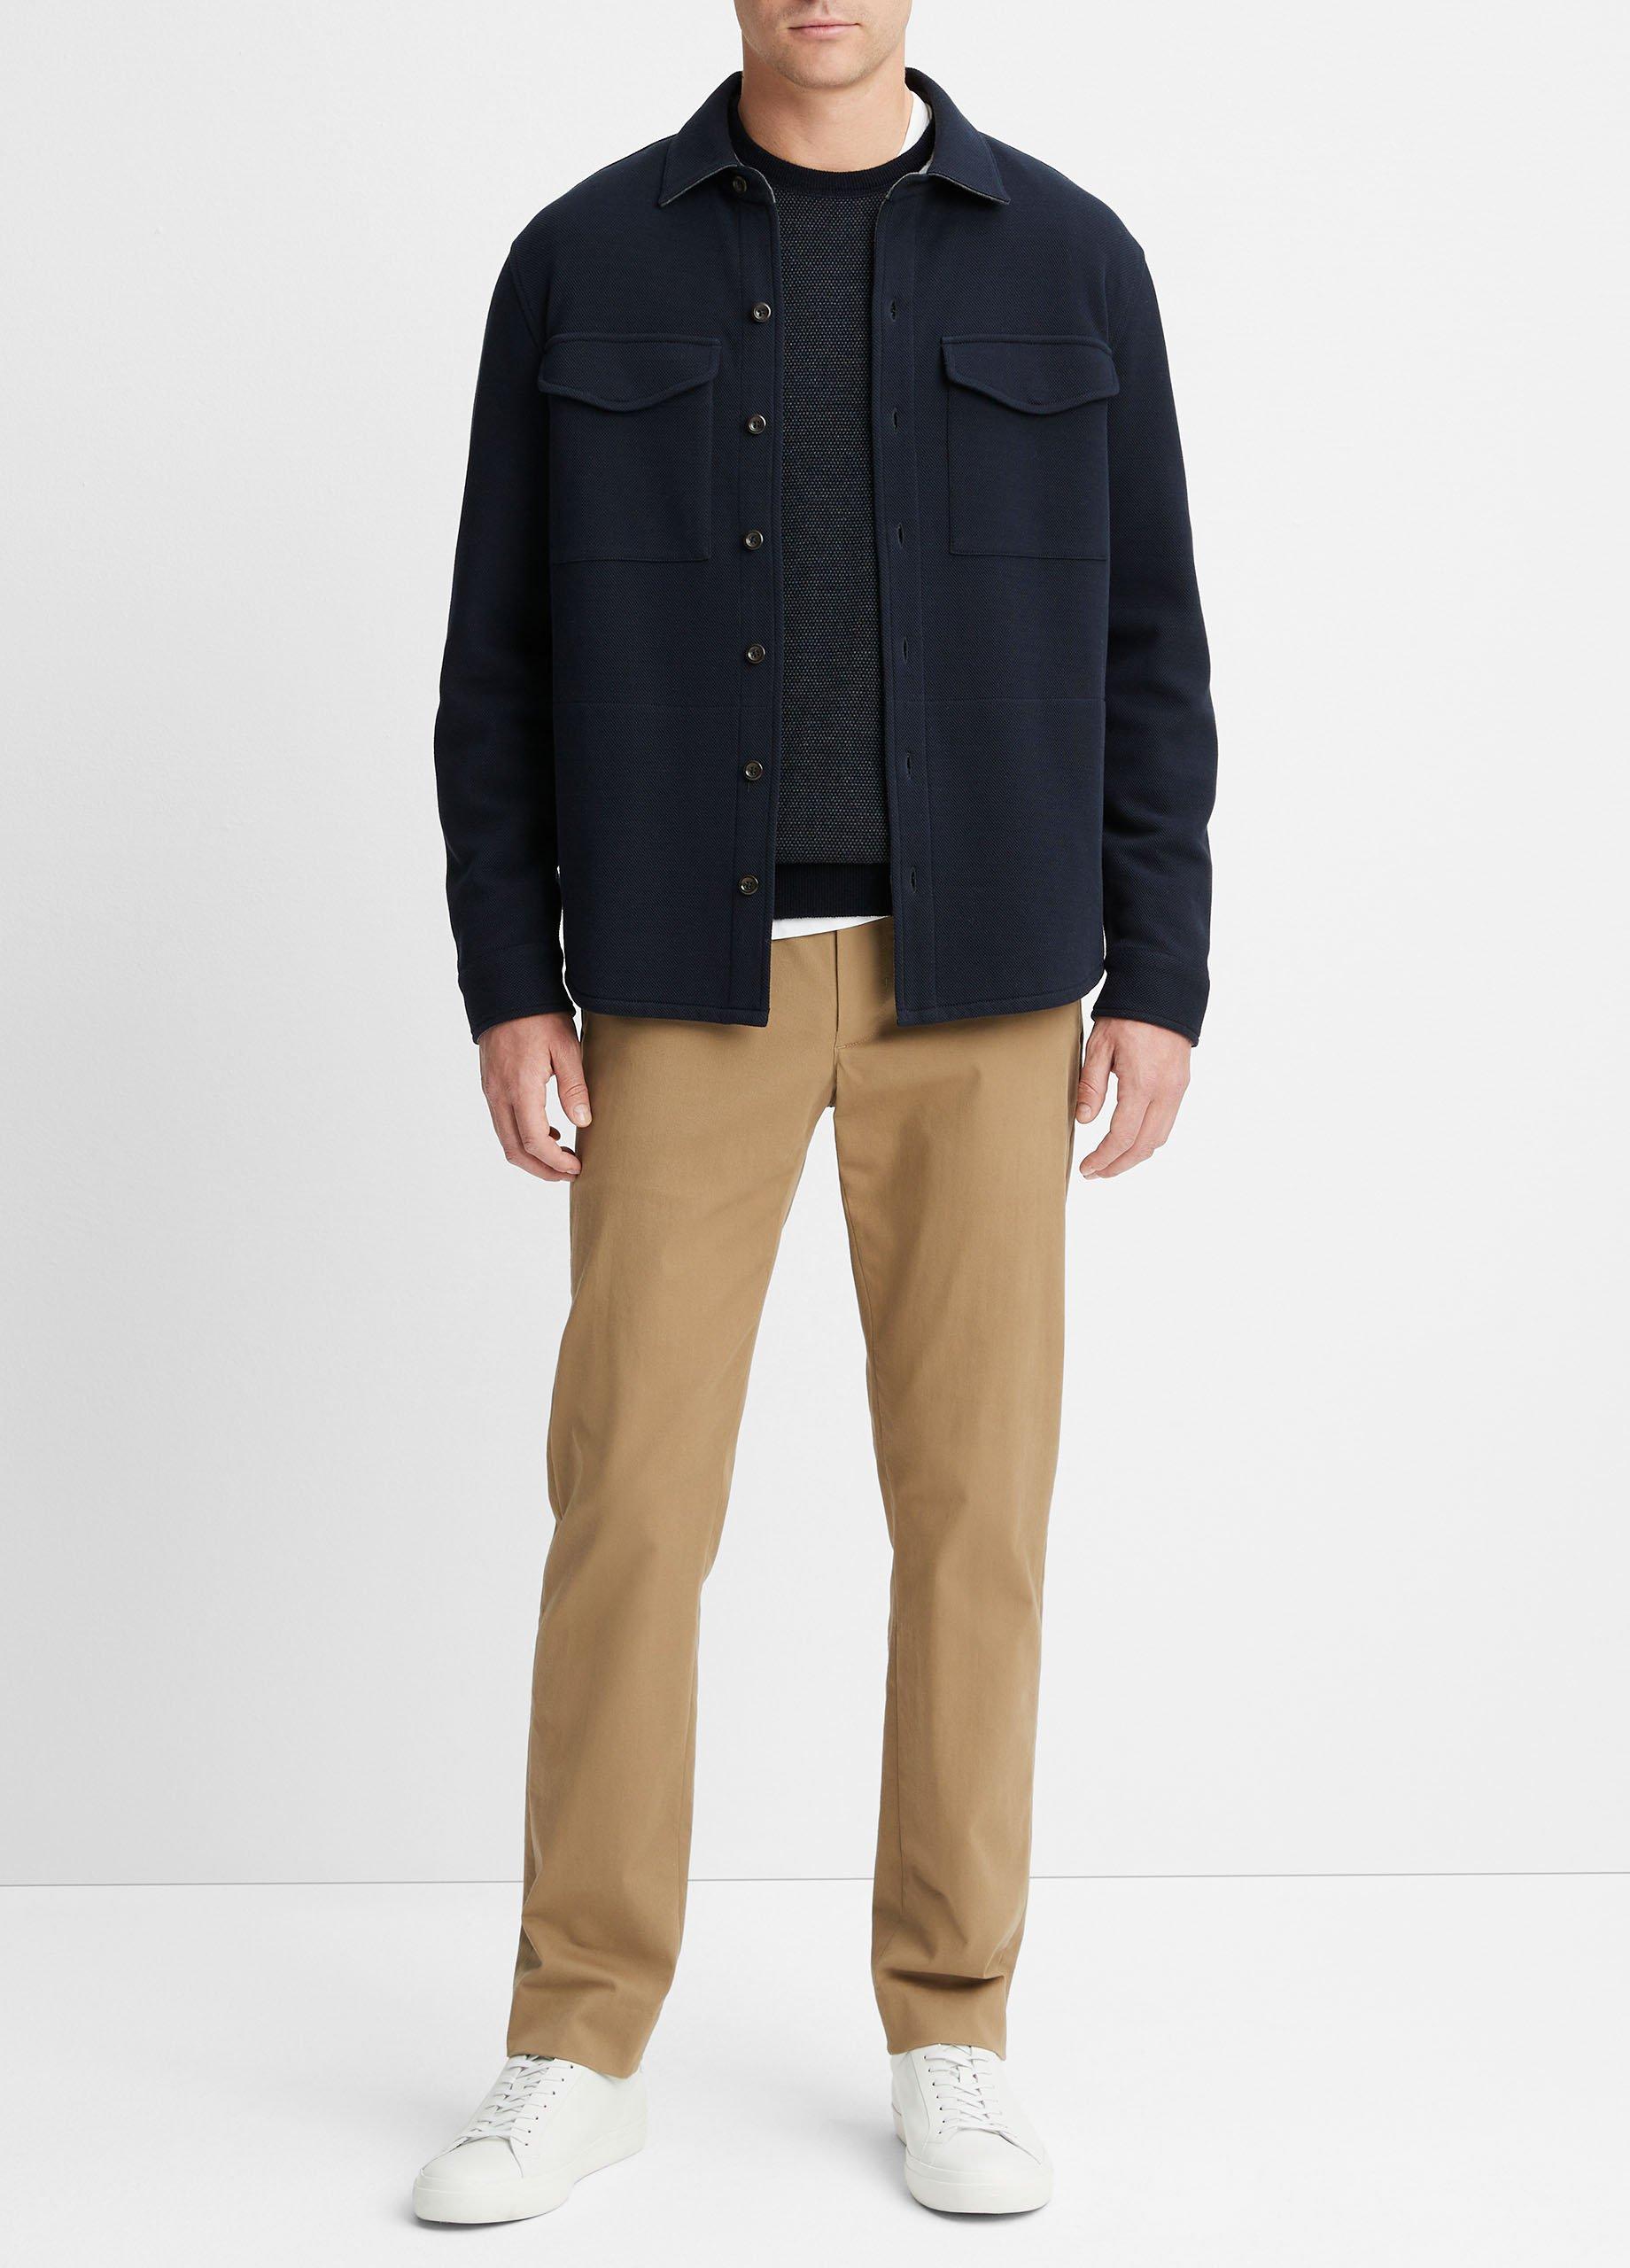 Double-Knit Piqué Shirt Jacket, Coastal/medium Heather Grey, Size XL Vince